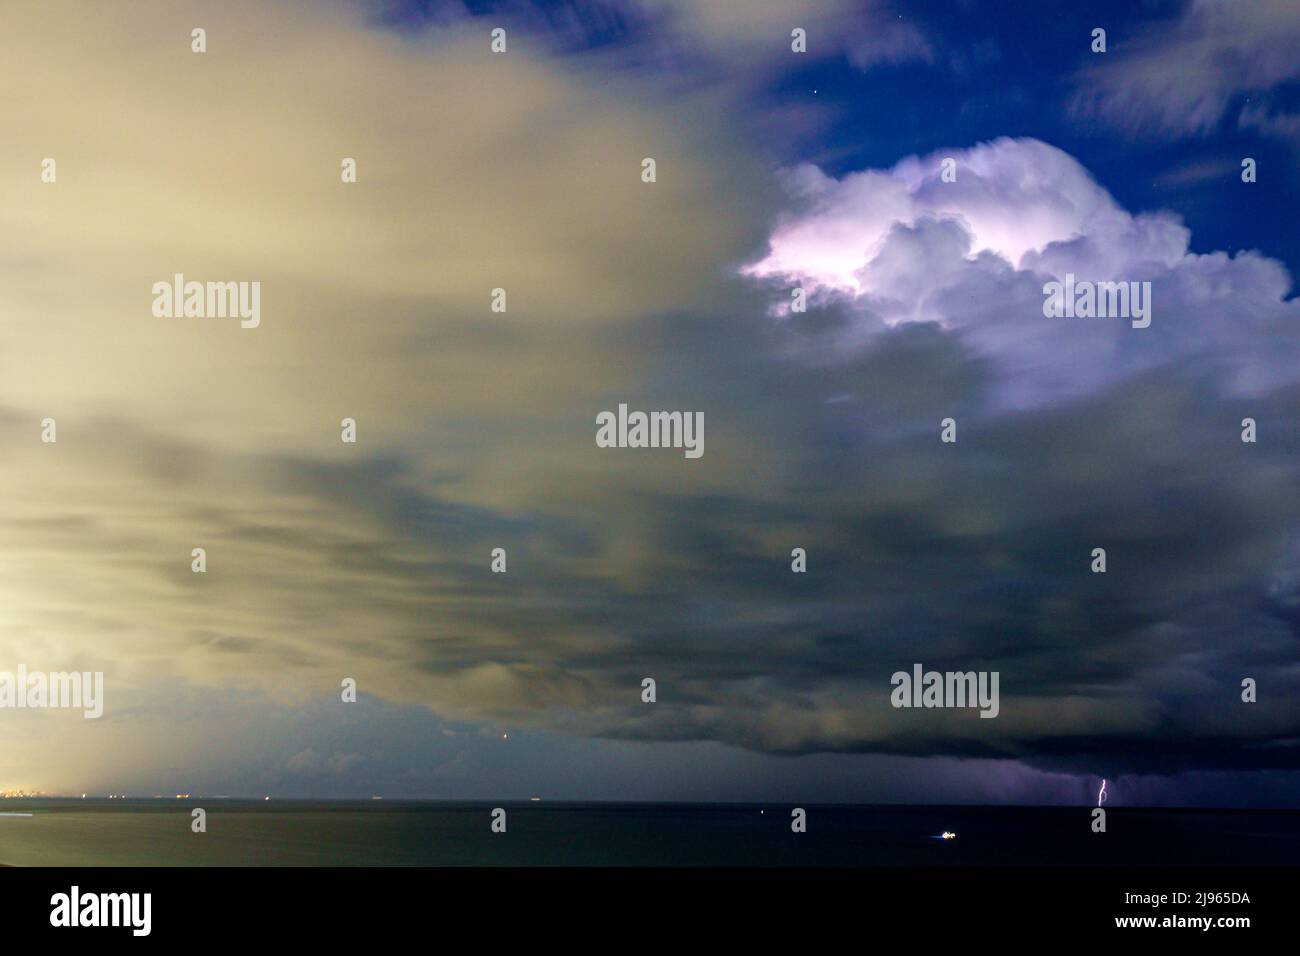 Miami Beach Florida, relámpagos pernos rayas nubes tormenta noche, sobre el Océano Atlántico Foto de stock